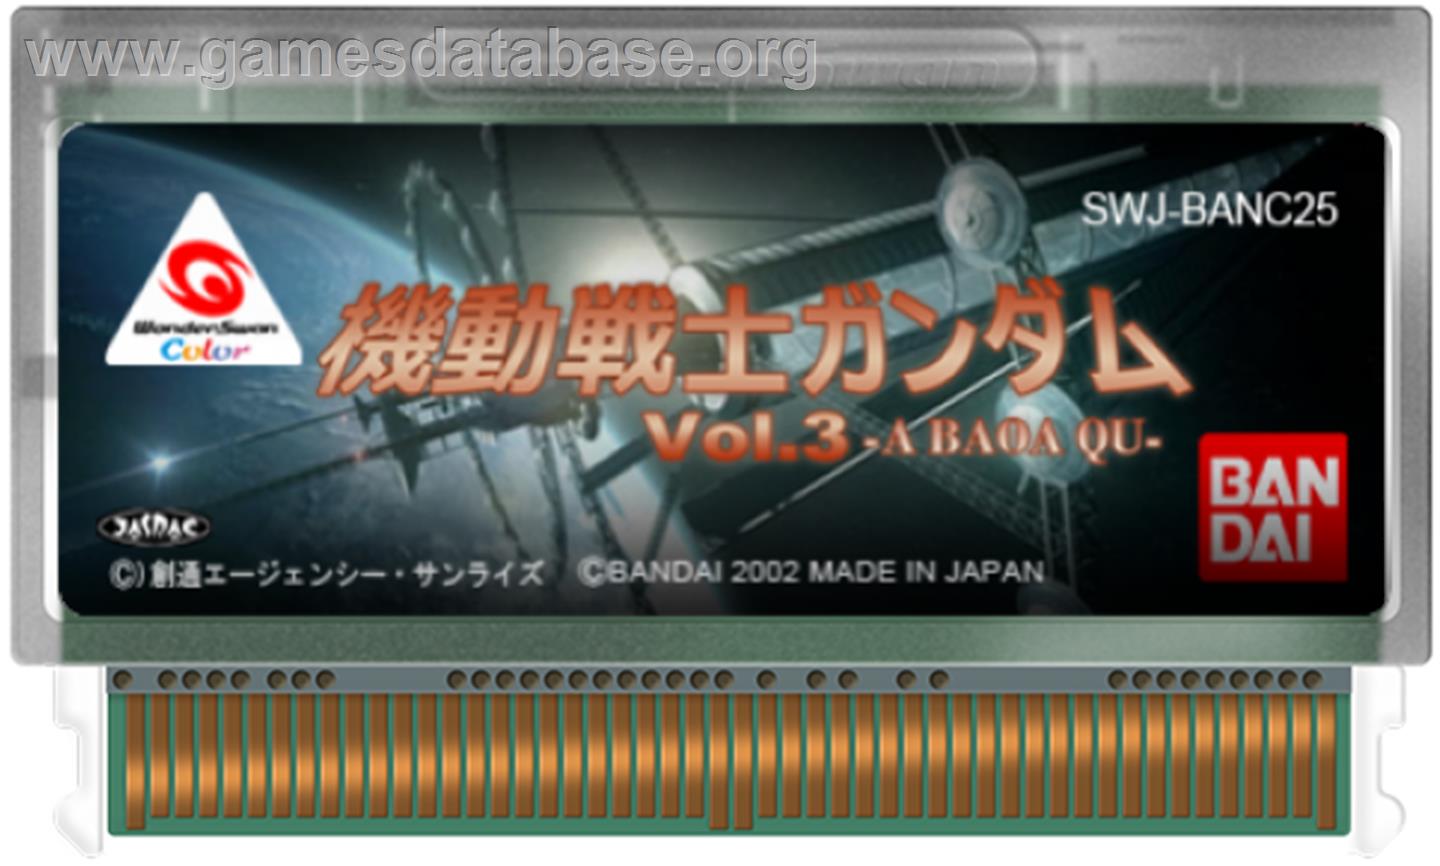 Mobile Suit Gundam: Vol. 3: A Baoa Qu - Bandai WonderSwan Color - Artwork - Cartridge